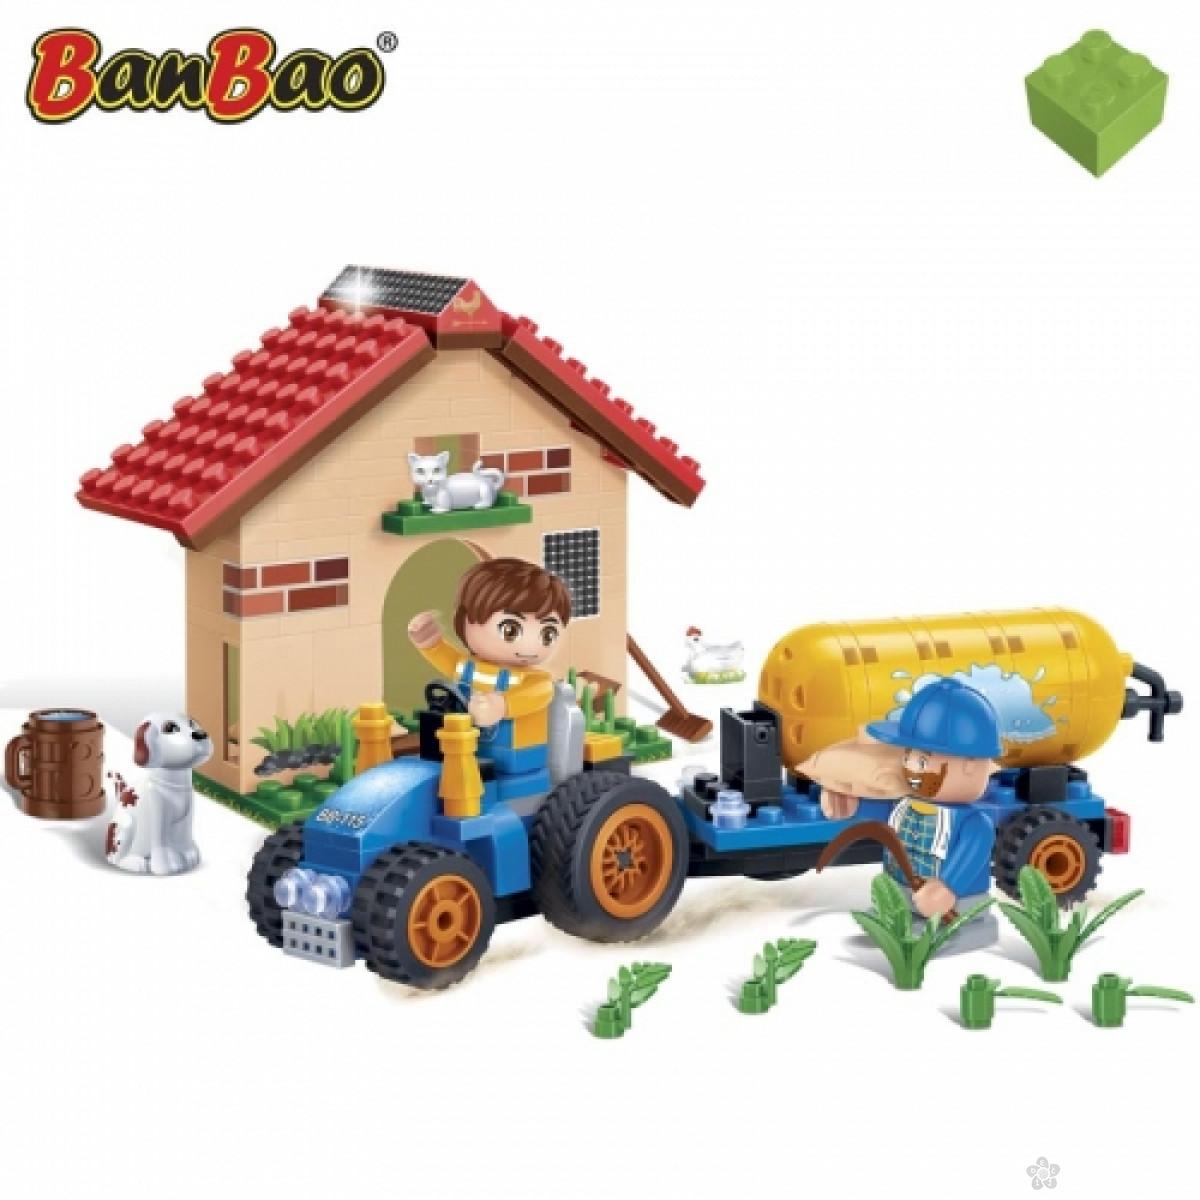 Farma-traktor, 8582 